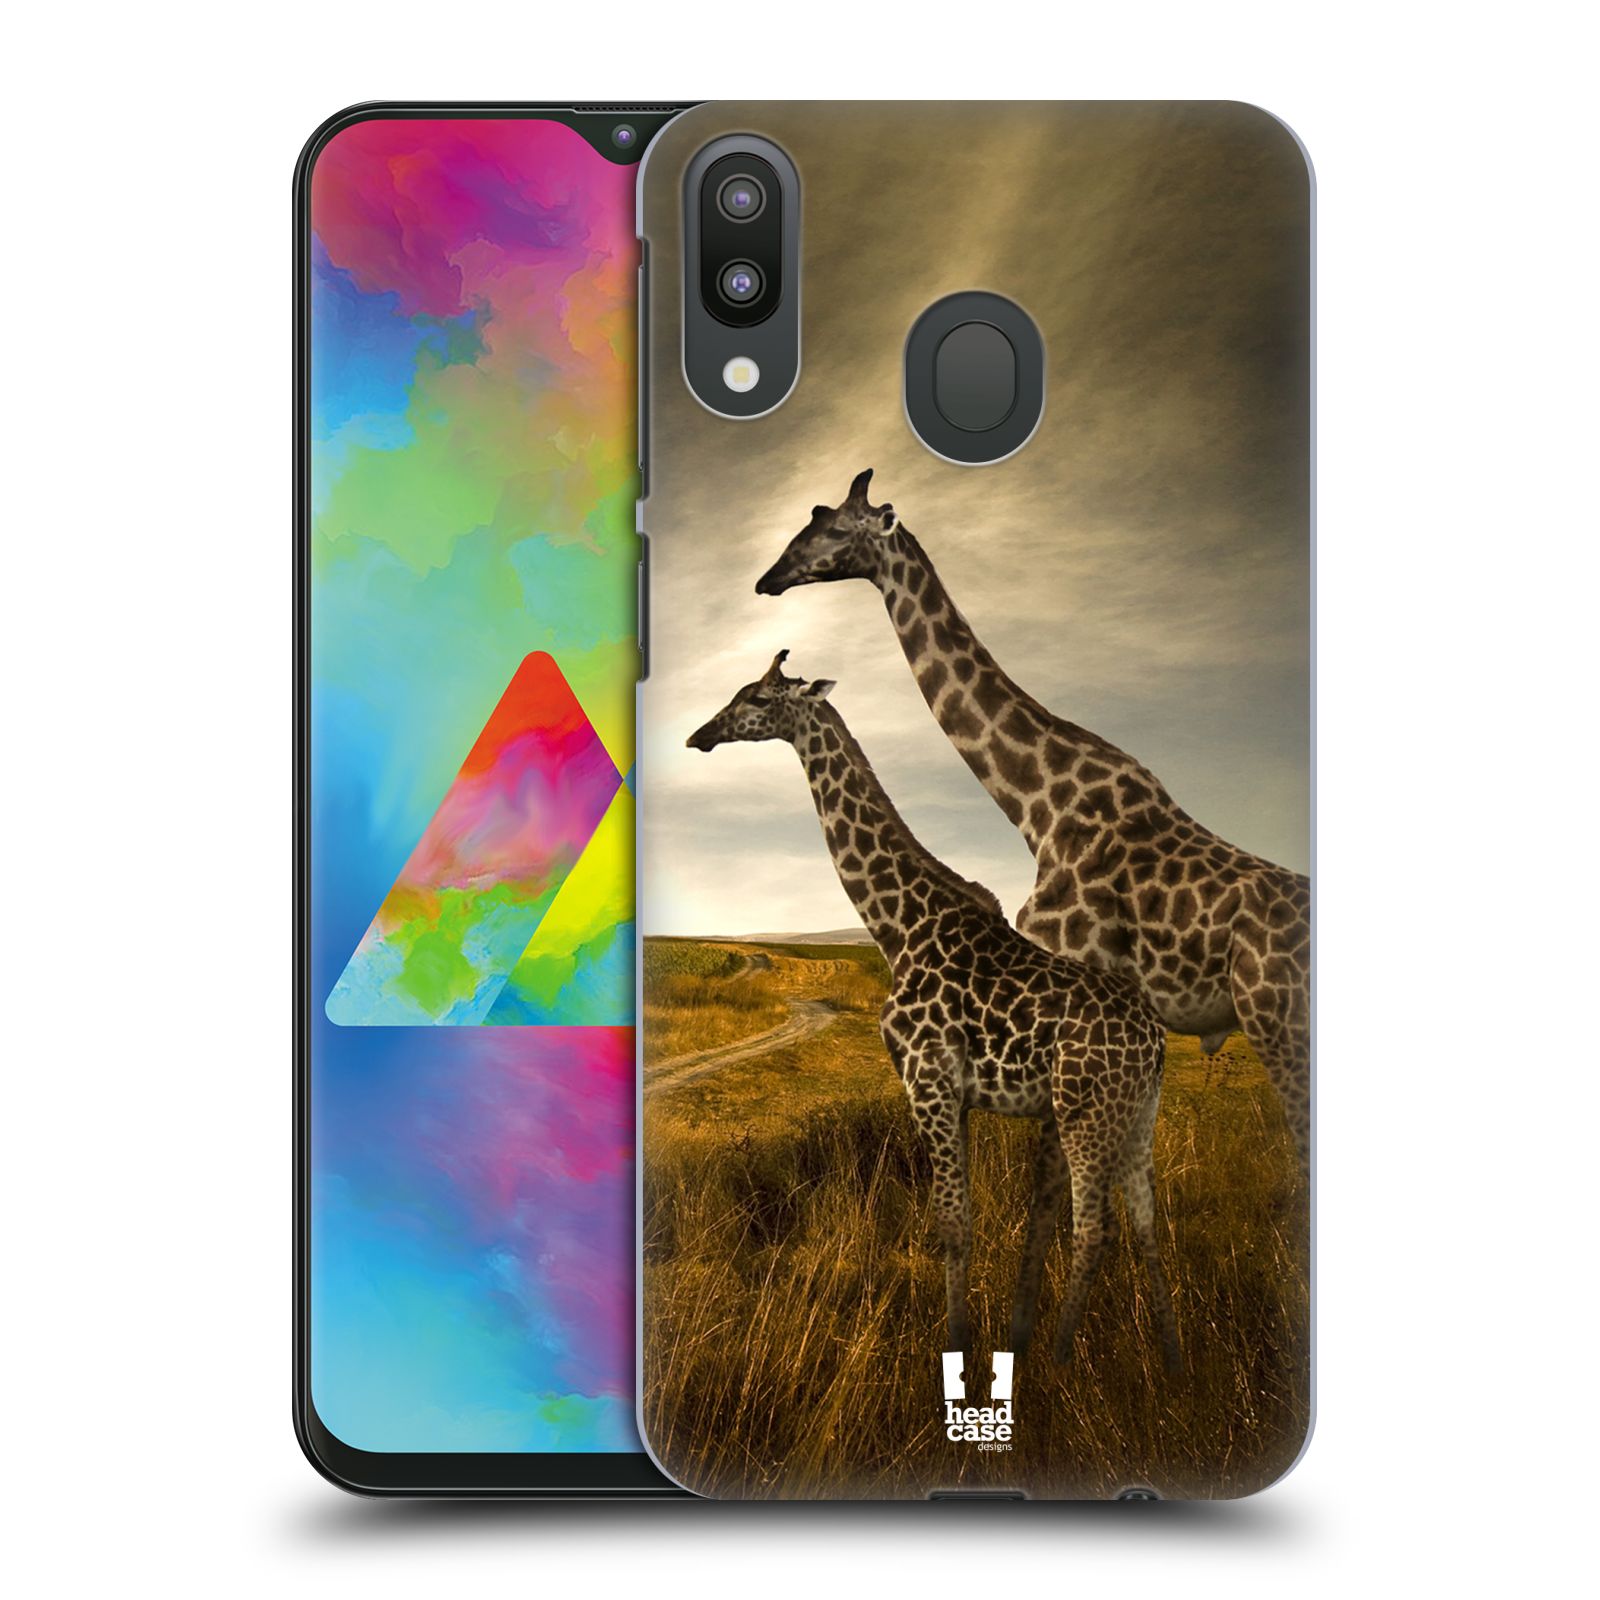 Zadní obal pro mobil Samsung Galaxy M20 - HEAD CASE - Svět zvířat žirafy